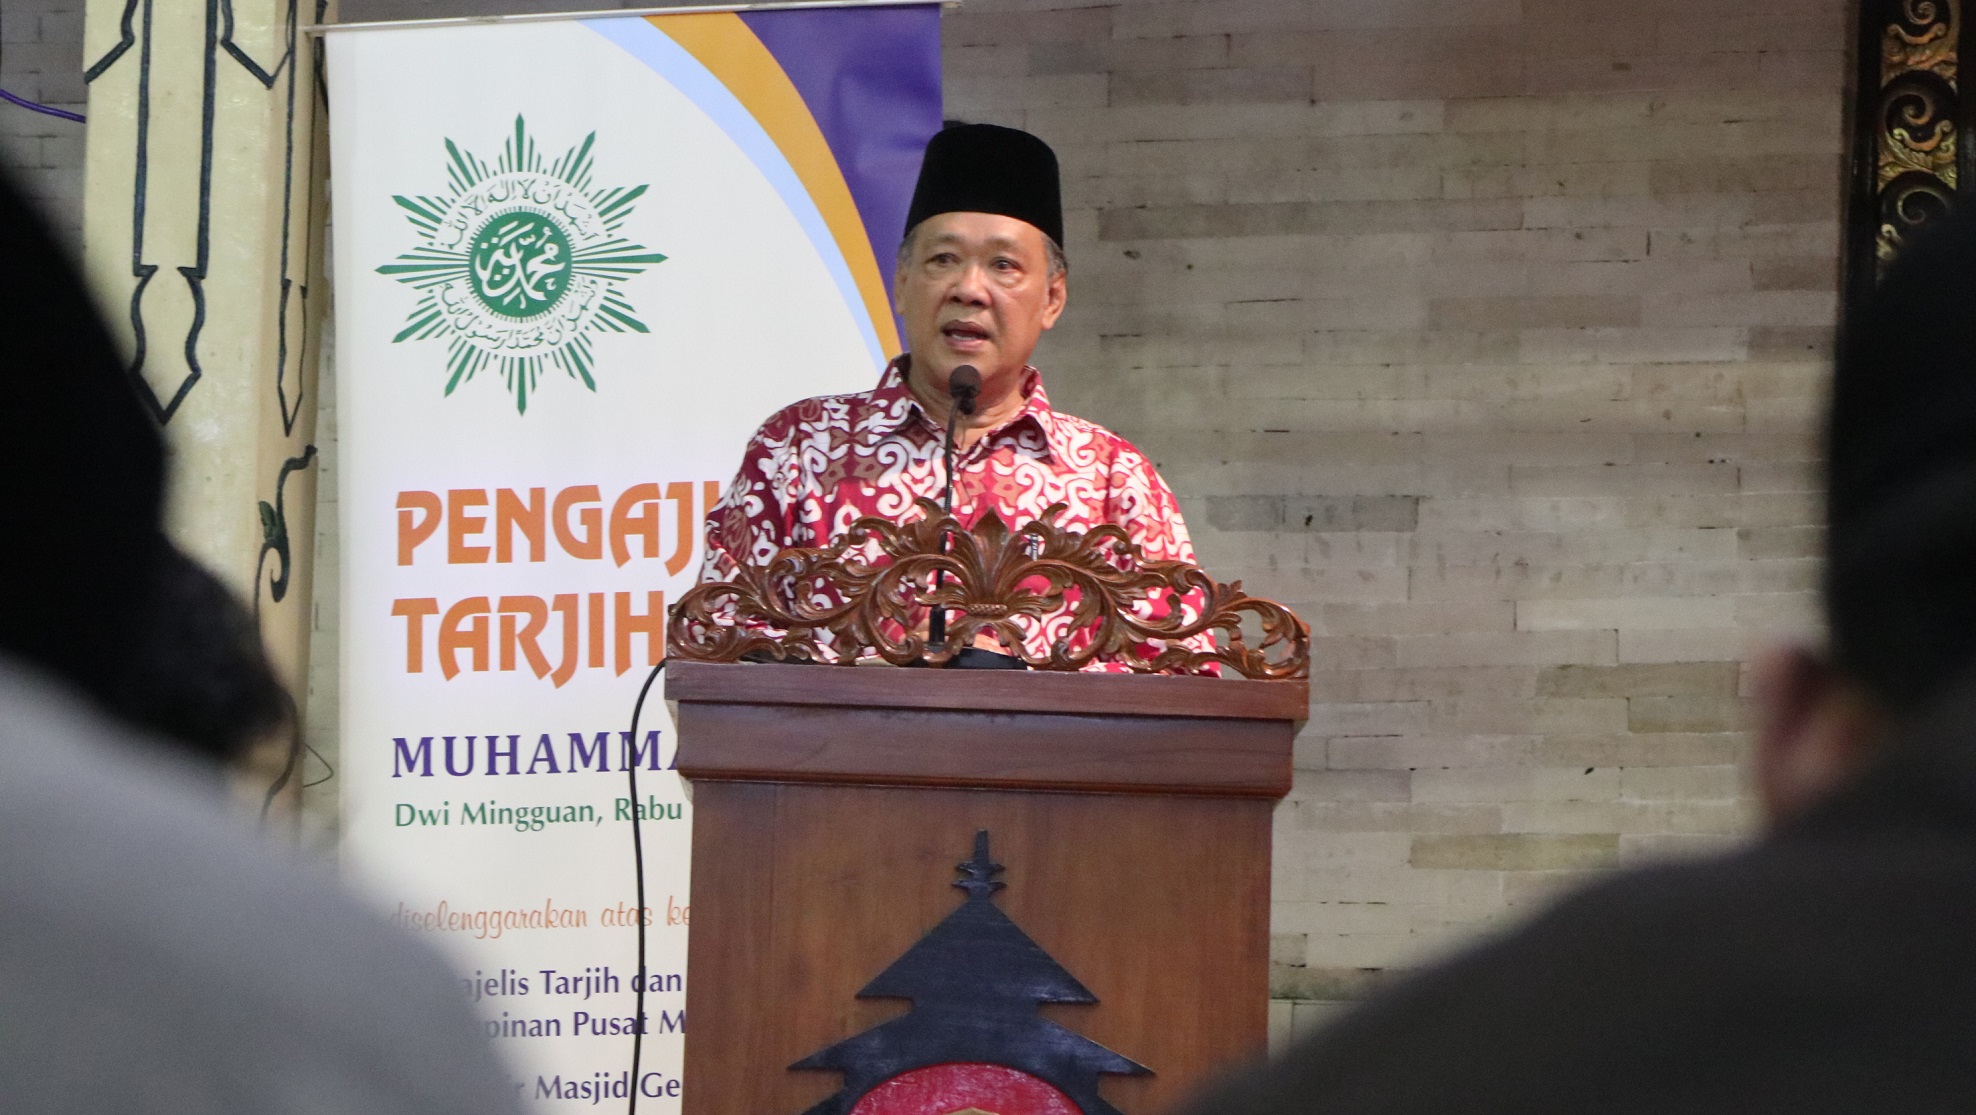 PROSEDUR: Ketua Majelis Tarjih dan Tajdid (MTT) PP Muhammadiyah, Syamsul Anwar